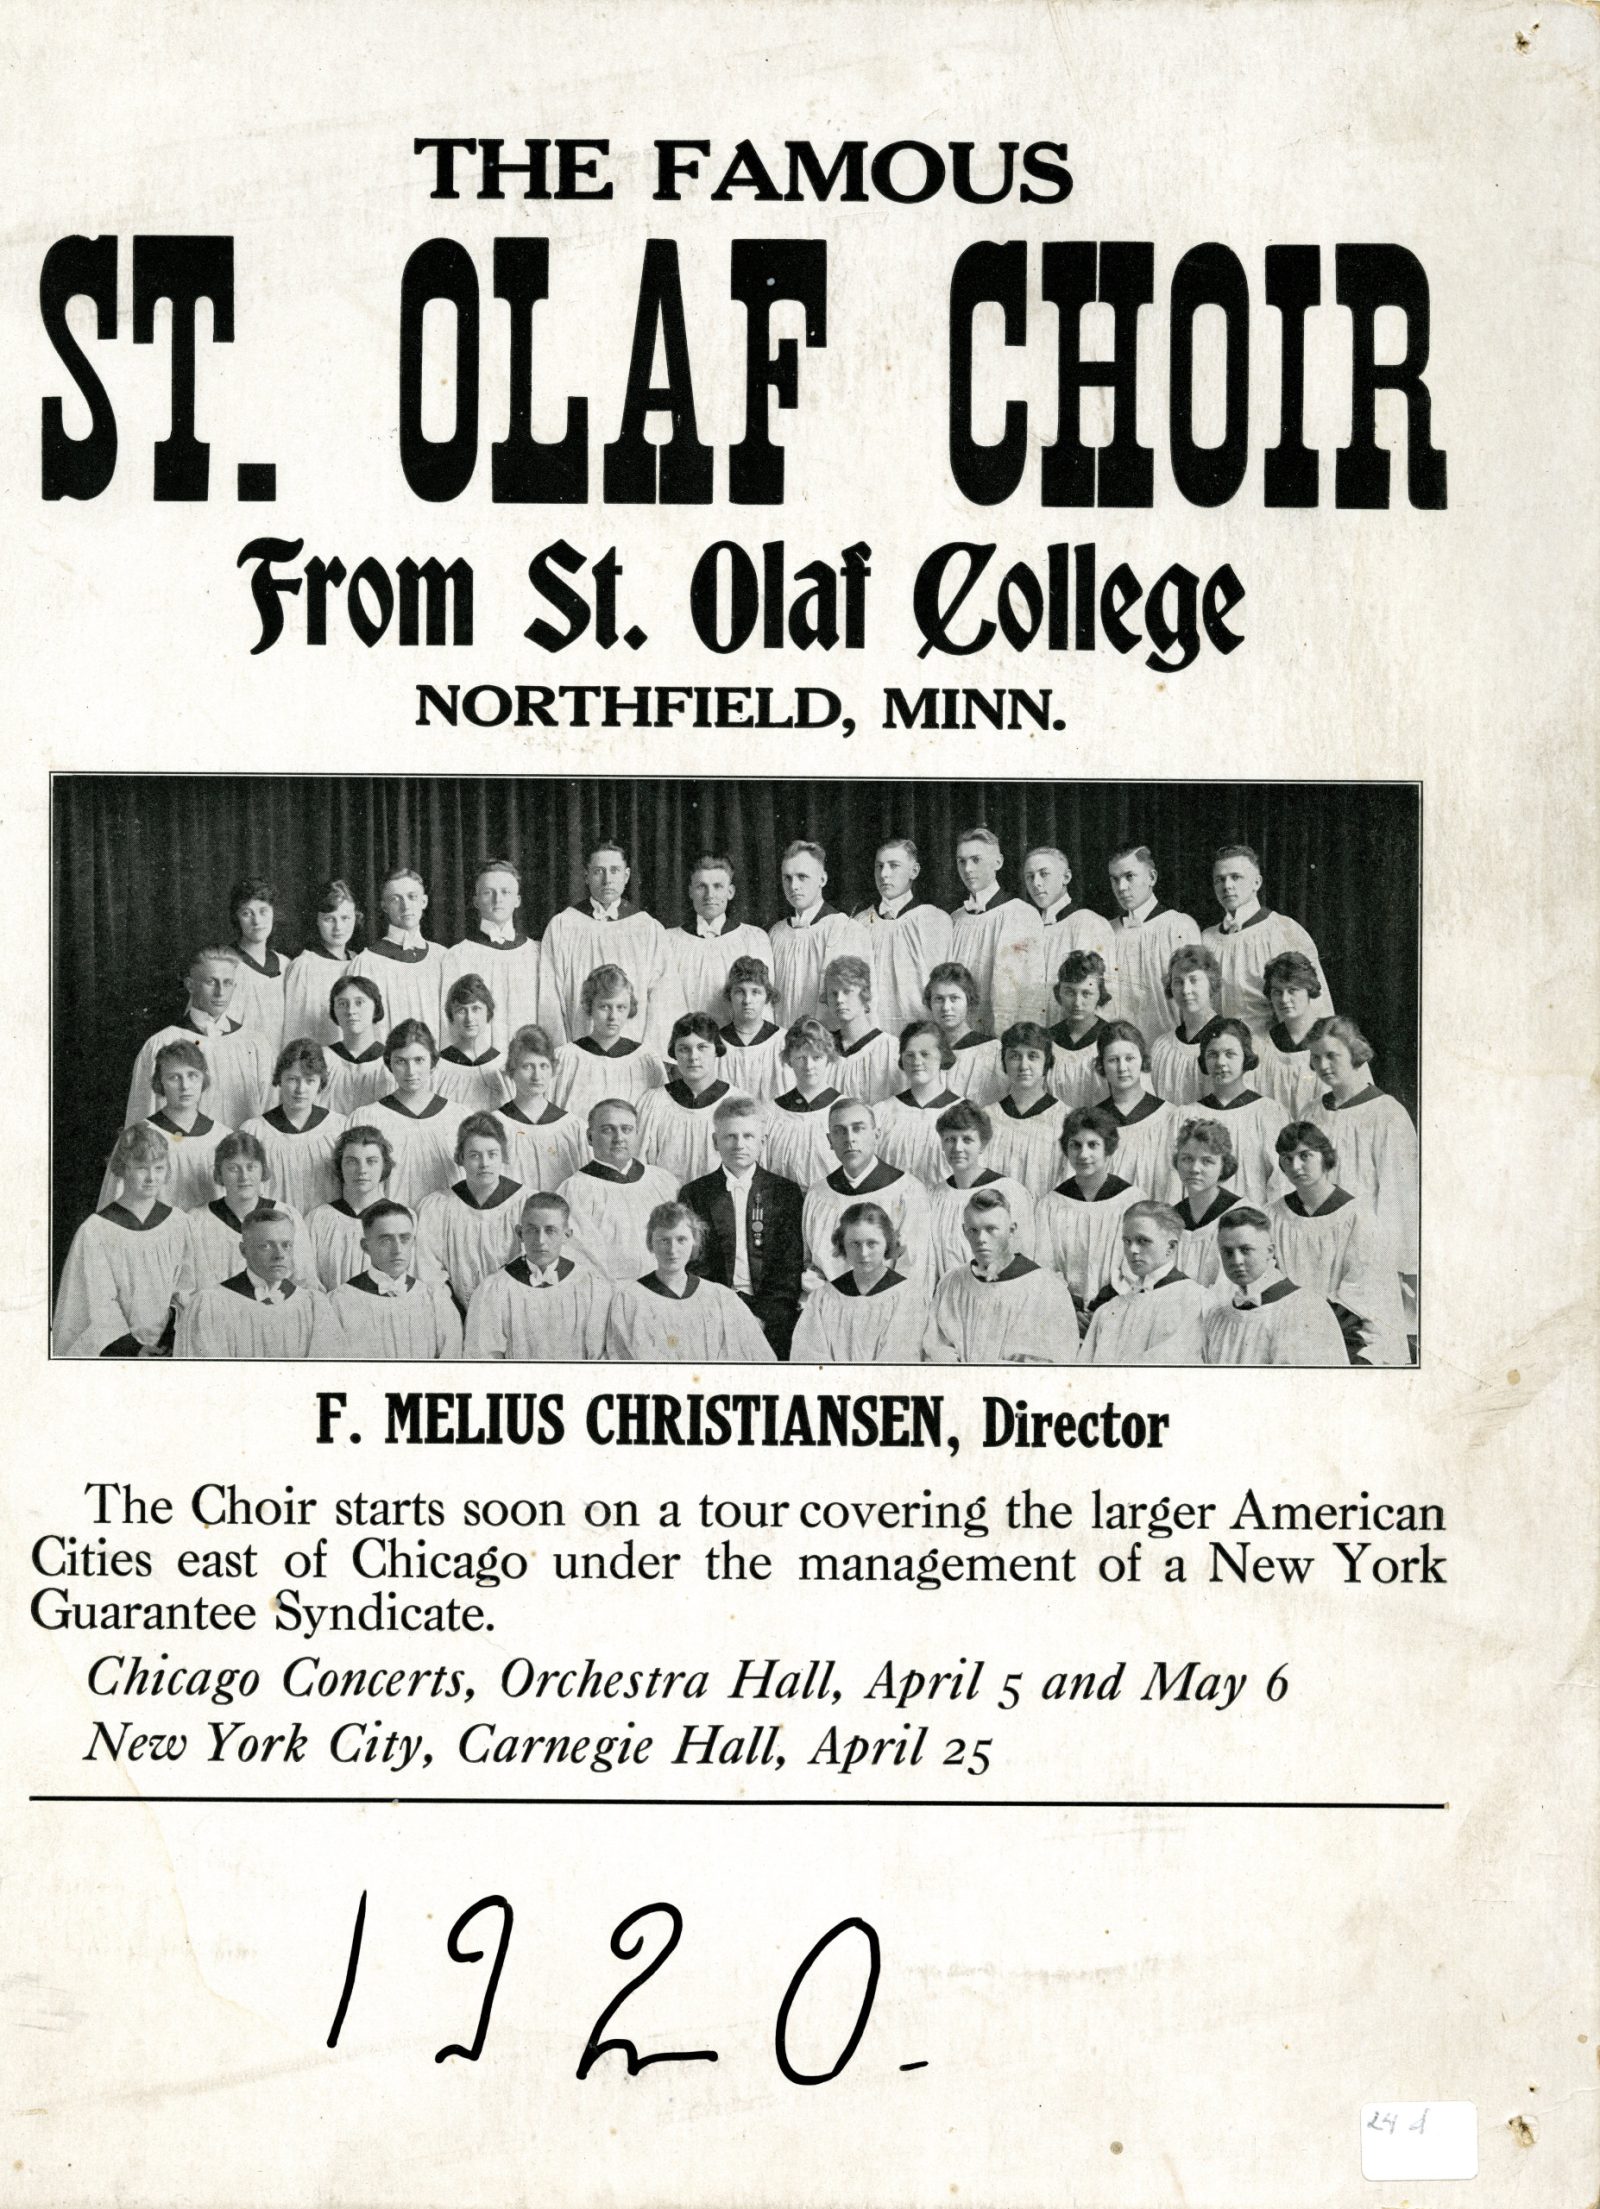 1920 Choir Tour poster